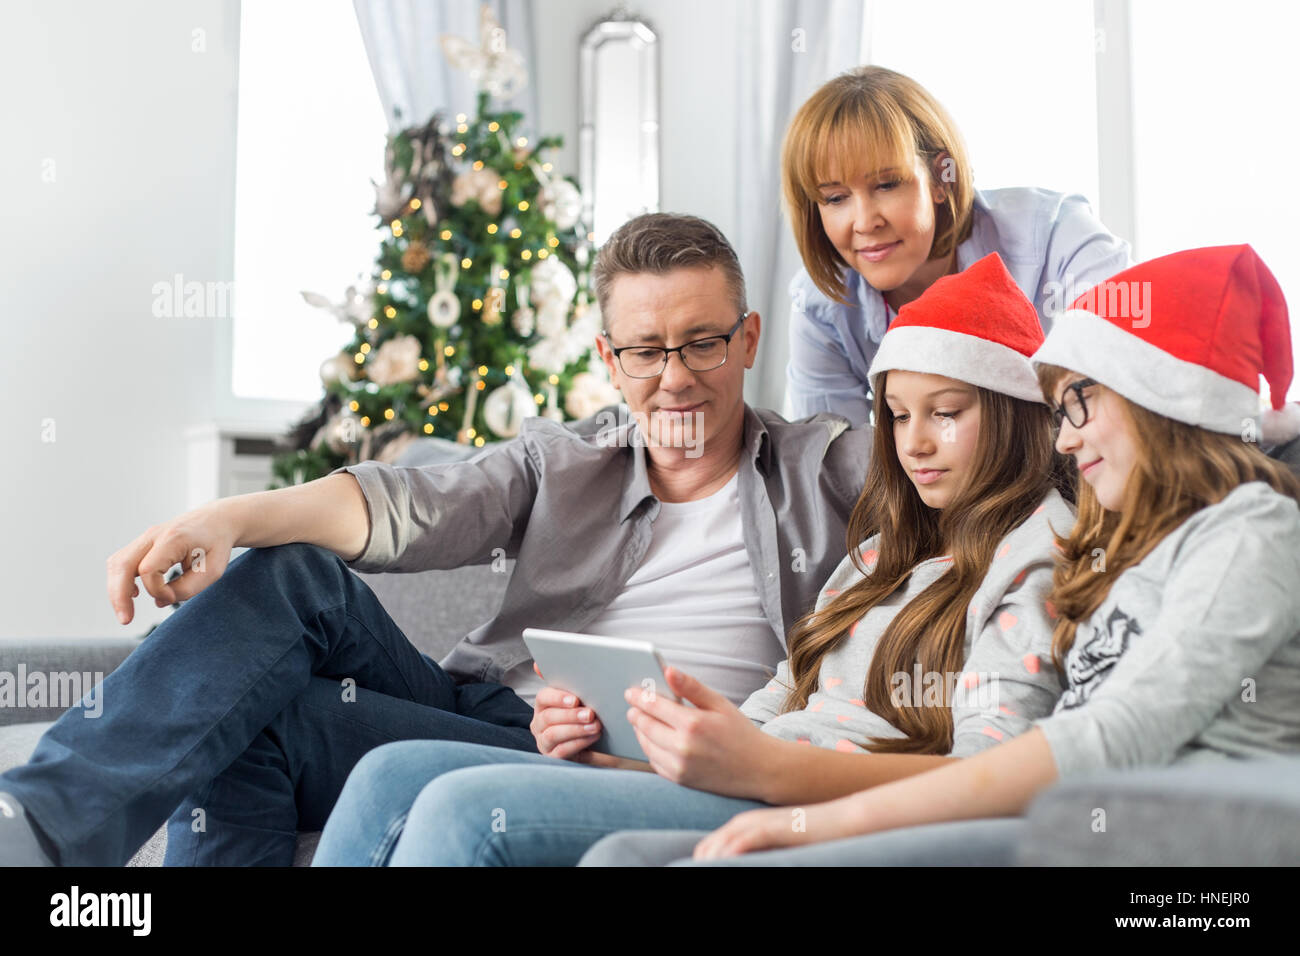 Famiglia di quattro persone con tavoletta digitale a casa durante il periodo di Natale Foto Stock